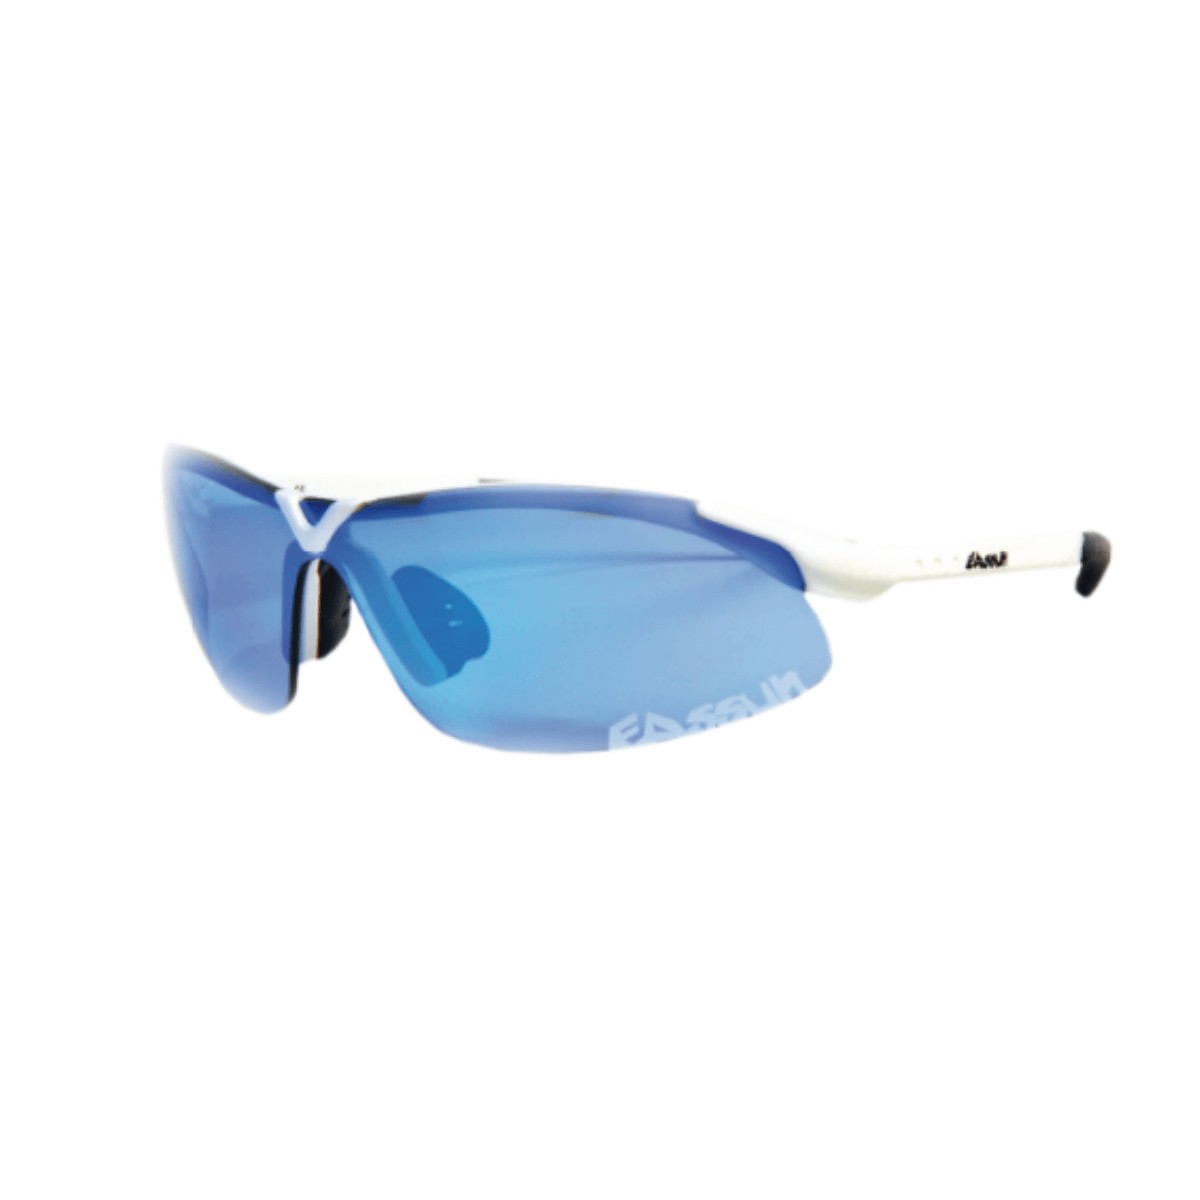 Ist der günstig Kaufen-Eassun X-Light Revo Blau Weiß Sonnenbrille. Eassun X-Light Revo Blau Weiß Sonnenbrille <![CDATA[Eassun X-Light Revo Blau Weiß Sonnenbrille Die Eassun X-Light Brille ist eine extra leichte Brille, wie der Name schon sagt, da sie nur 16 Gramm wie